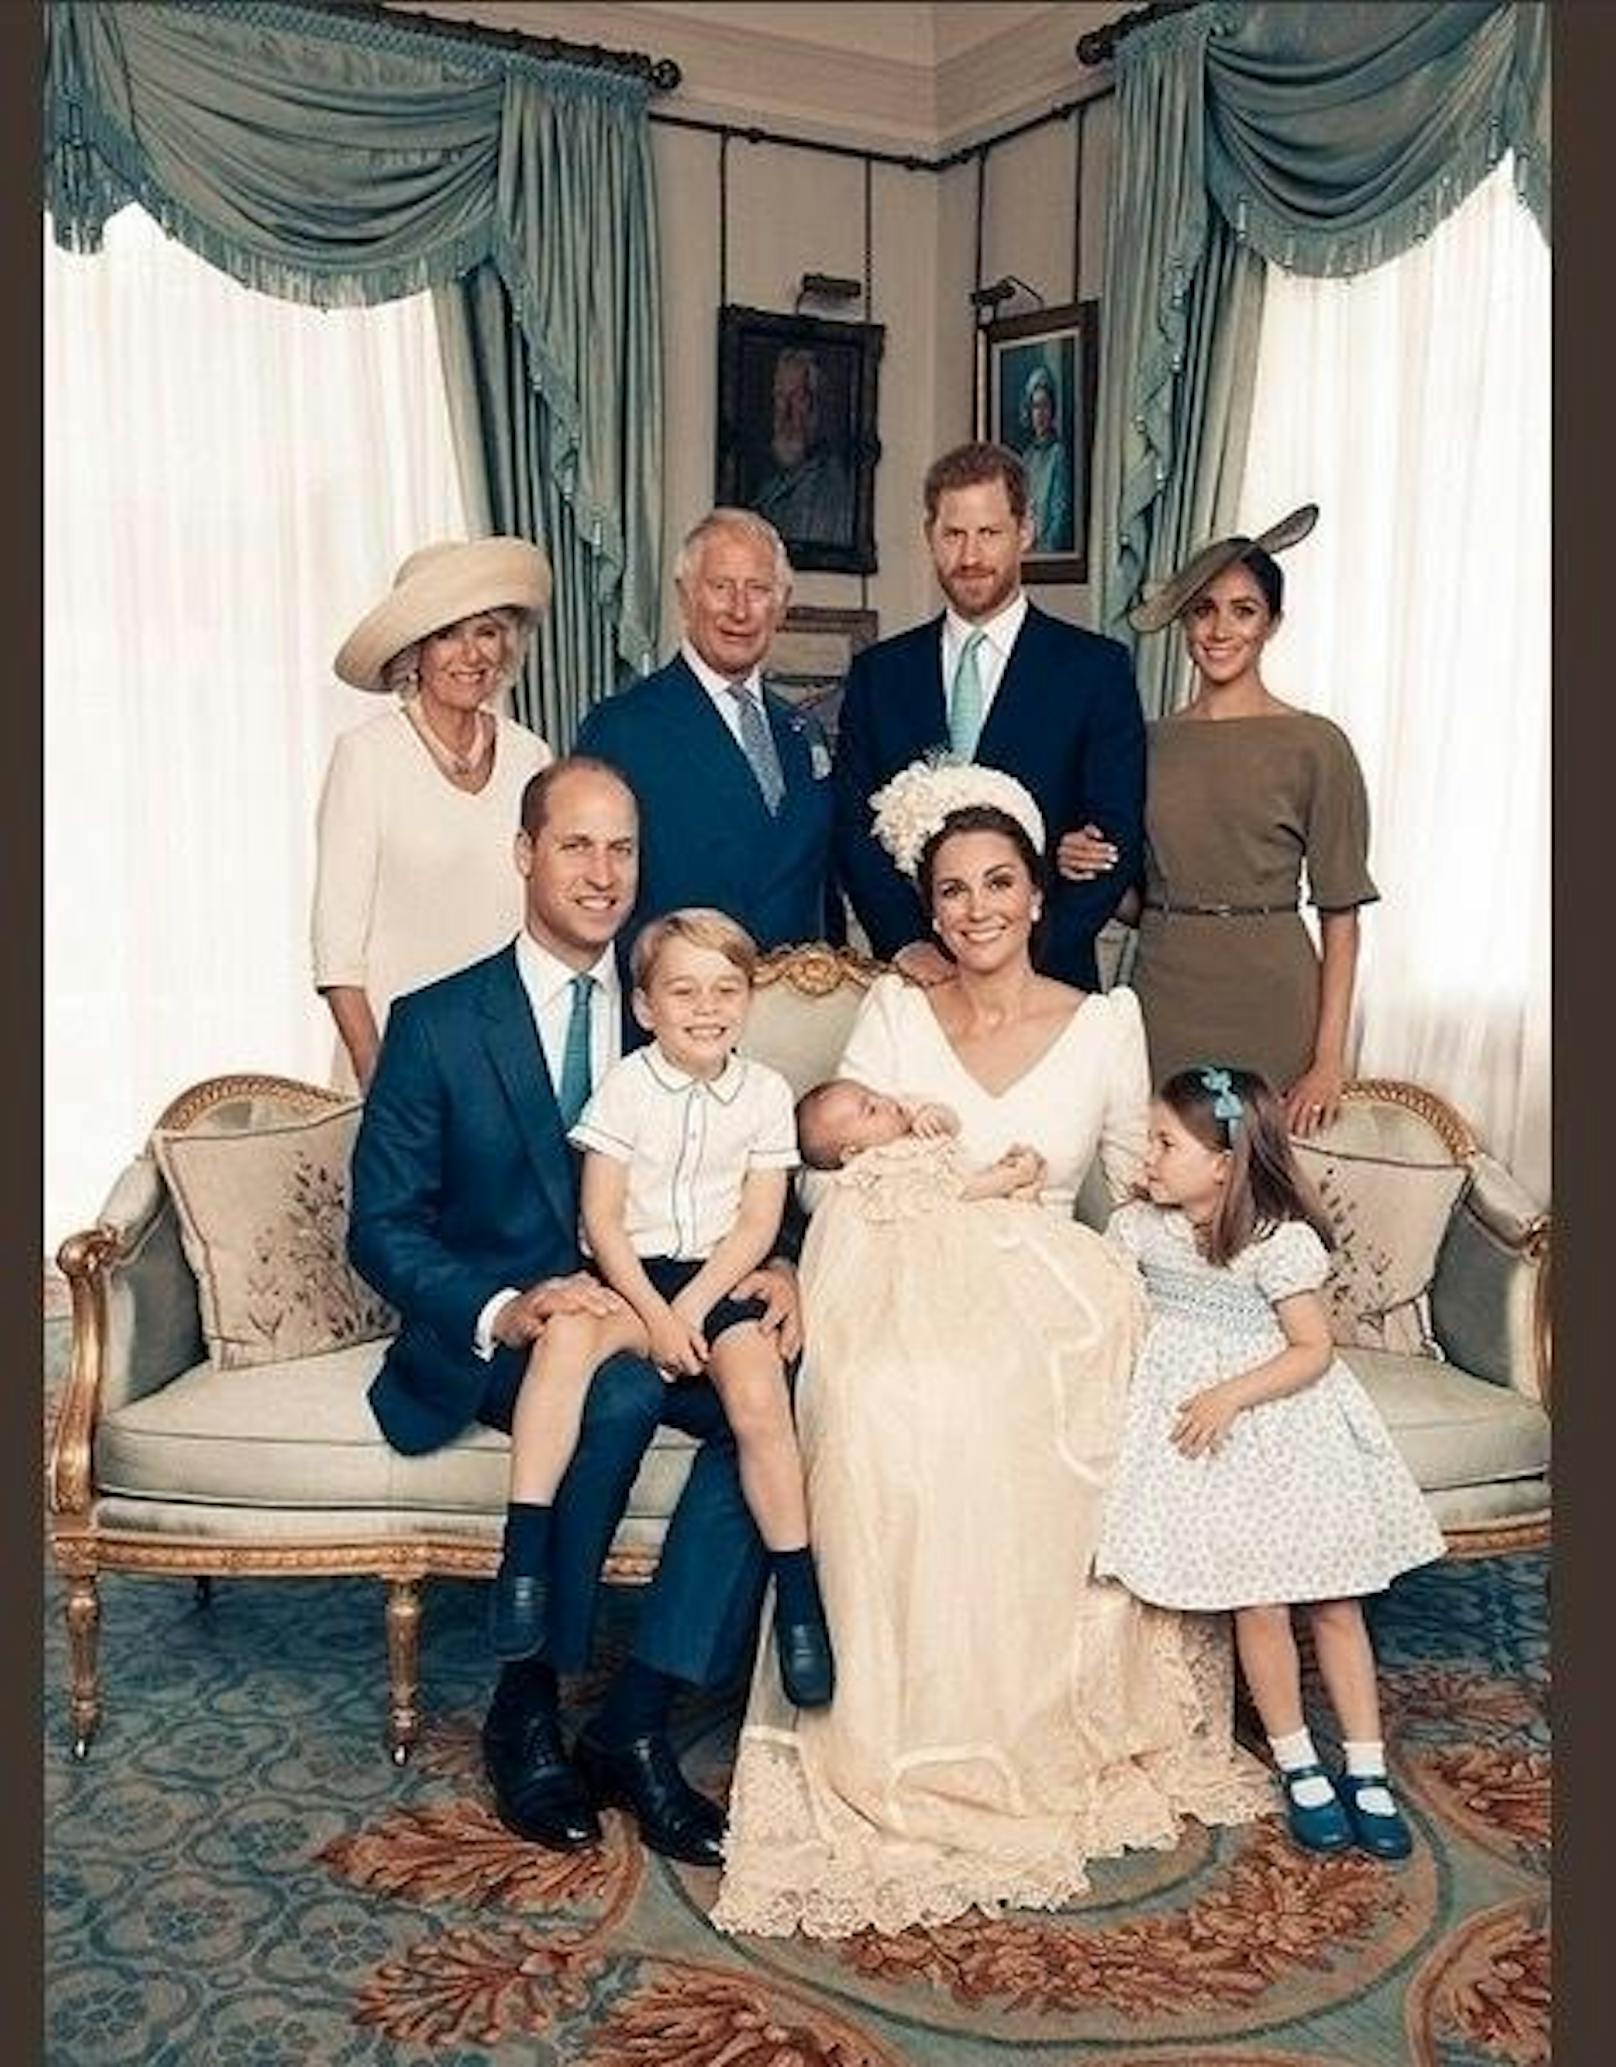 Gemeinsam mit Prinz Charles (69), Herzogin Camilla (70), Prinz Harry (33) und Herzogin Meghan (36) posieren Kate, William und ihre Kinder in einem der prunkvollen Räume im Clarence House. Alle Augen dürften bei dem Bild aber auf Charlotte und George liegen. Während der Prinz nämlich auf dem Schoss seines Vaters sitzt und breit in die Kamera grinst, schaut die kleine Prinzessin verzückt in die Richtung ihres Bruders.